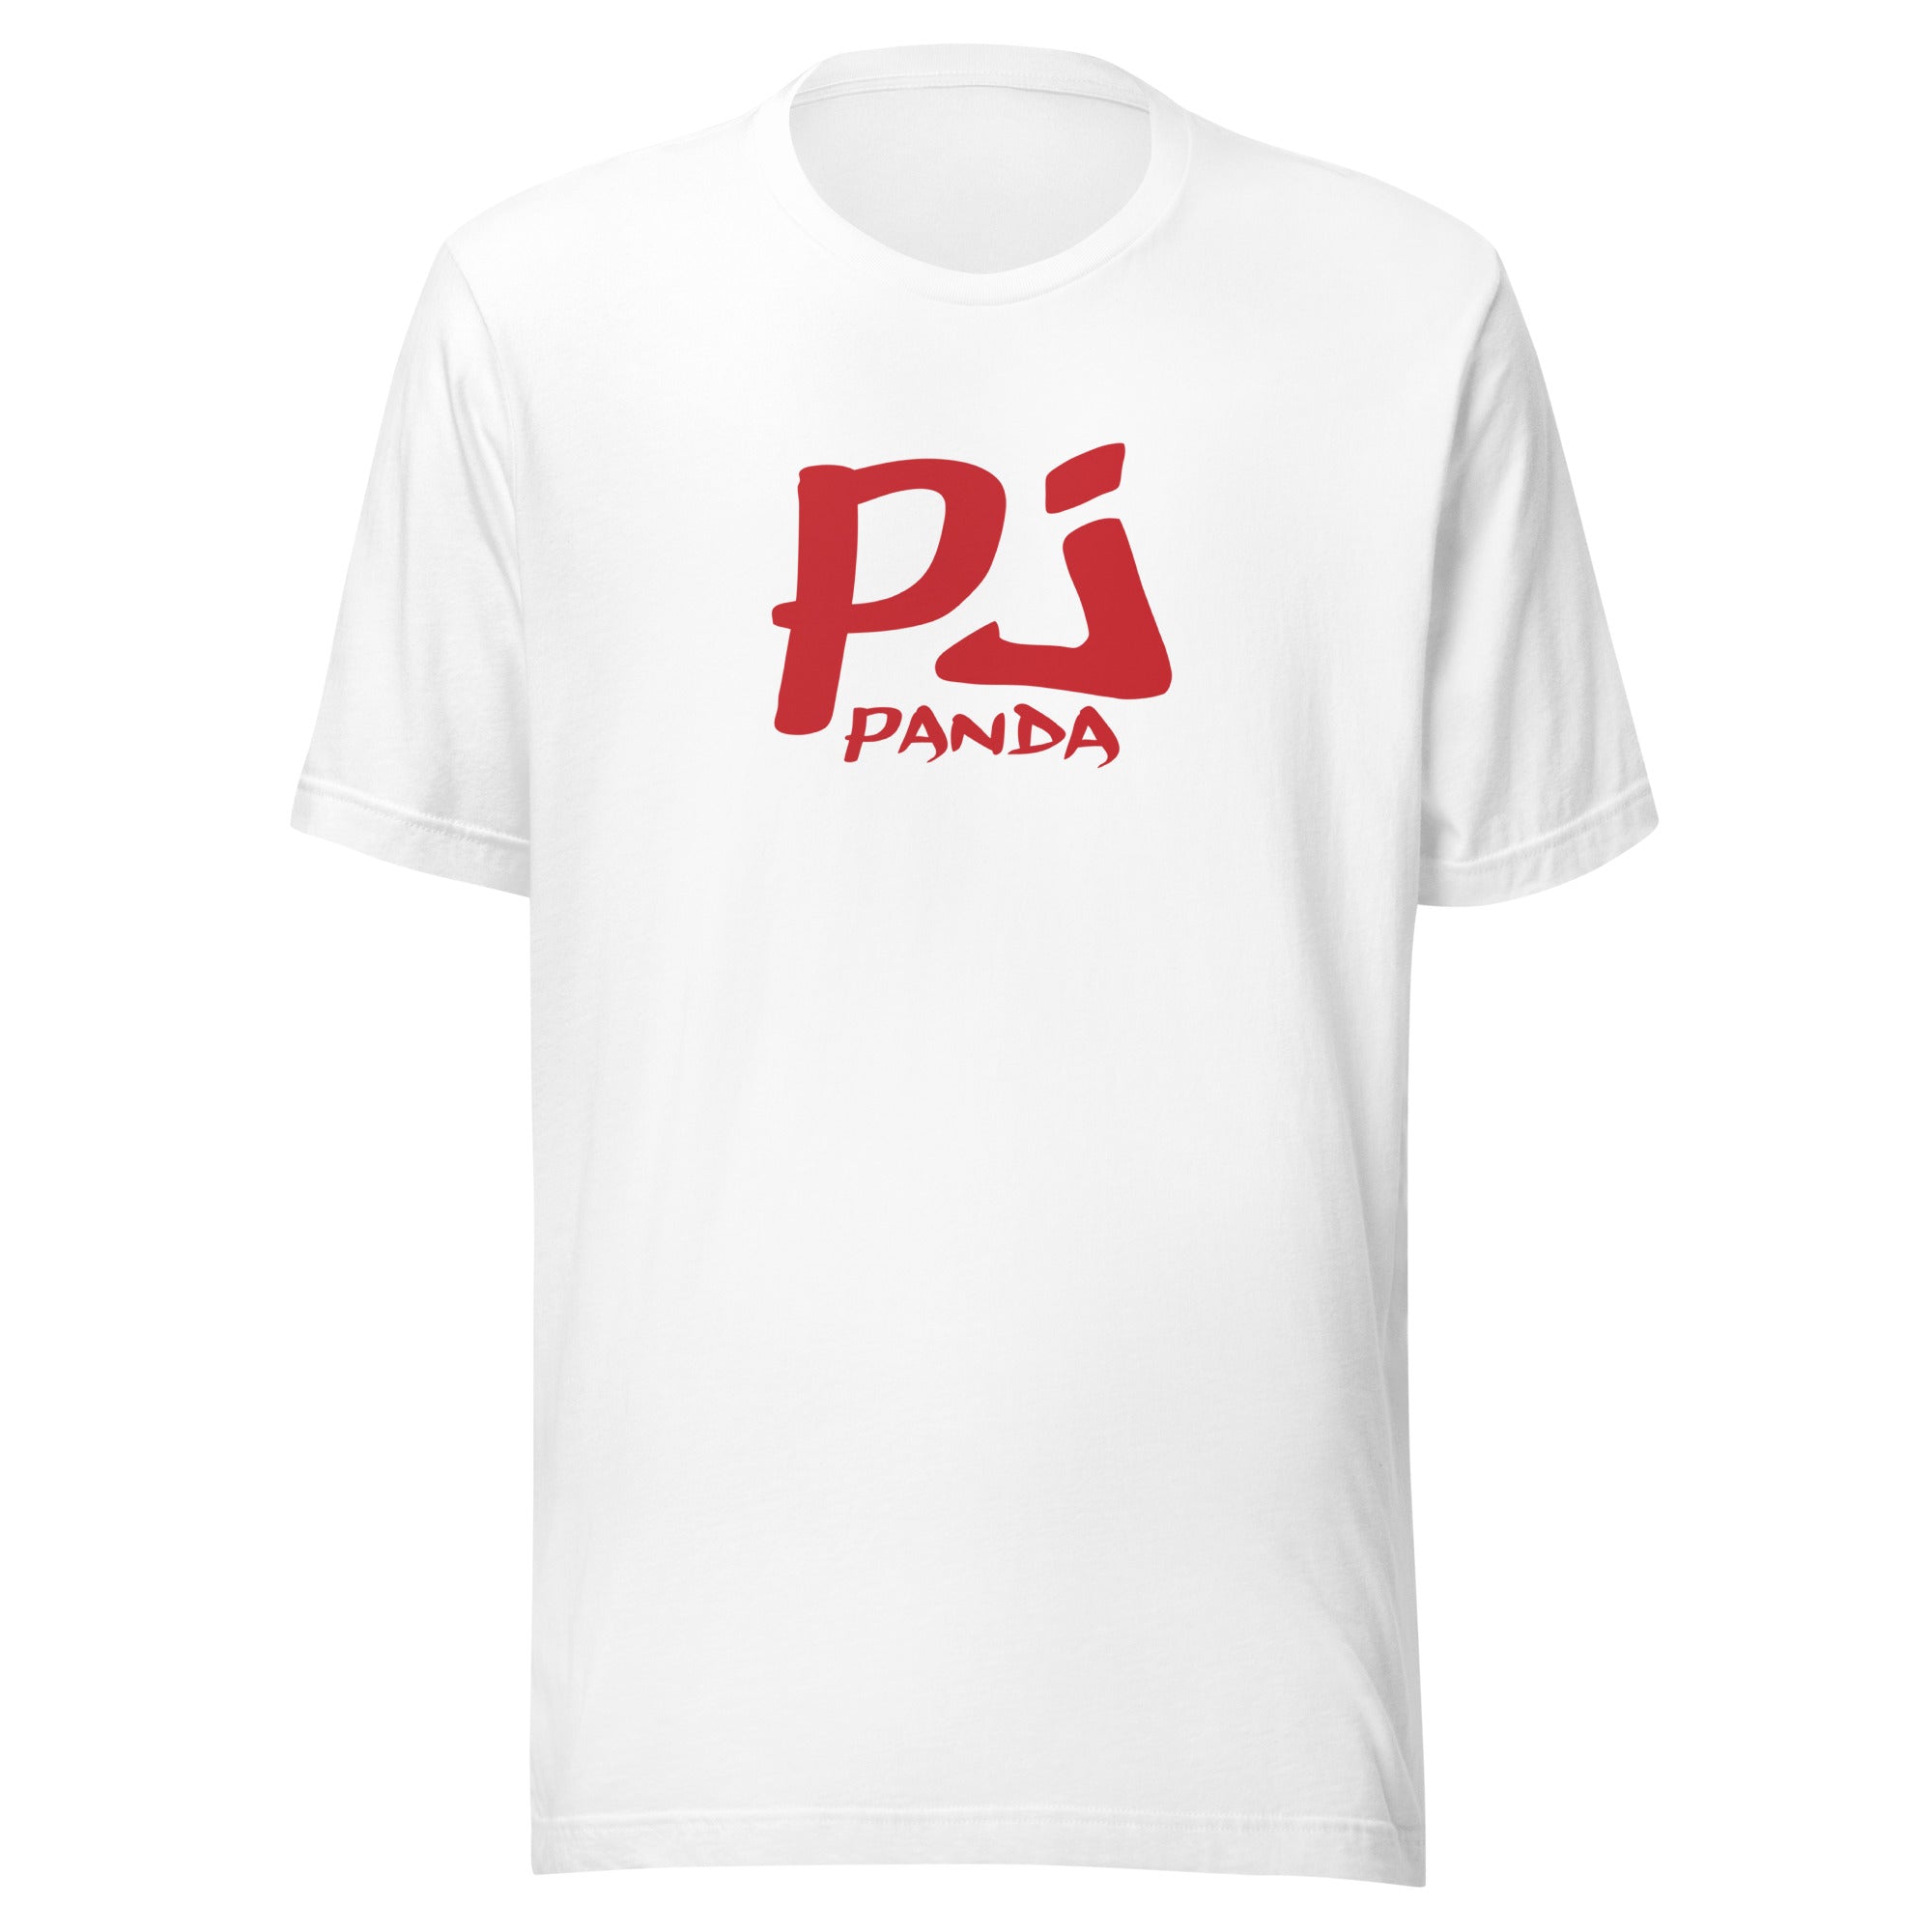 Pj Panda Logo Unisex t-shirt